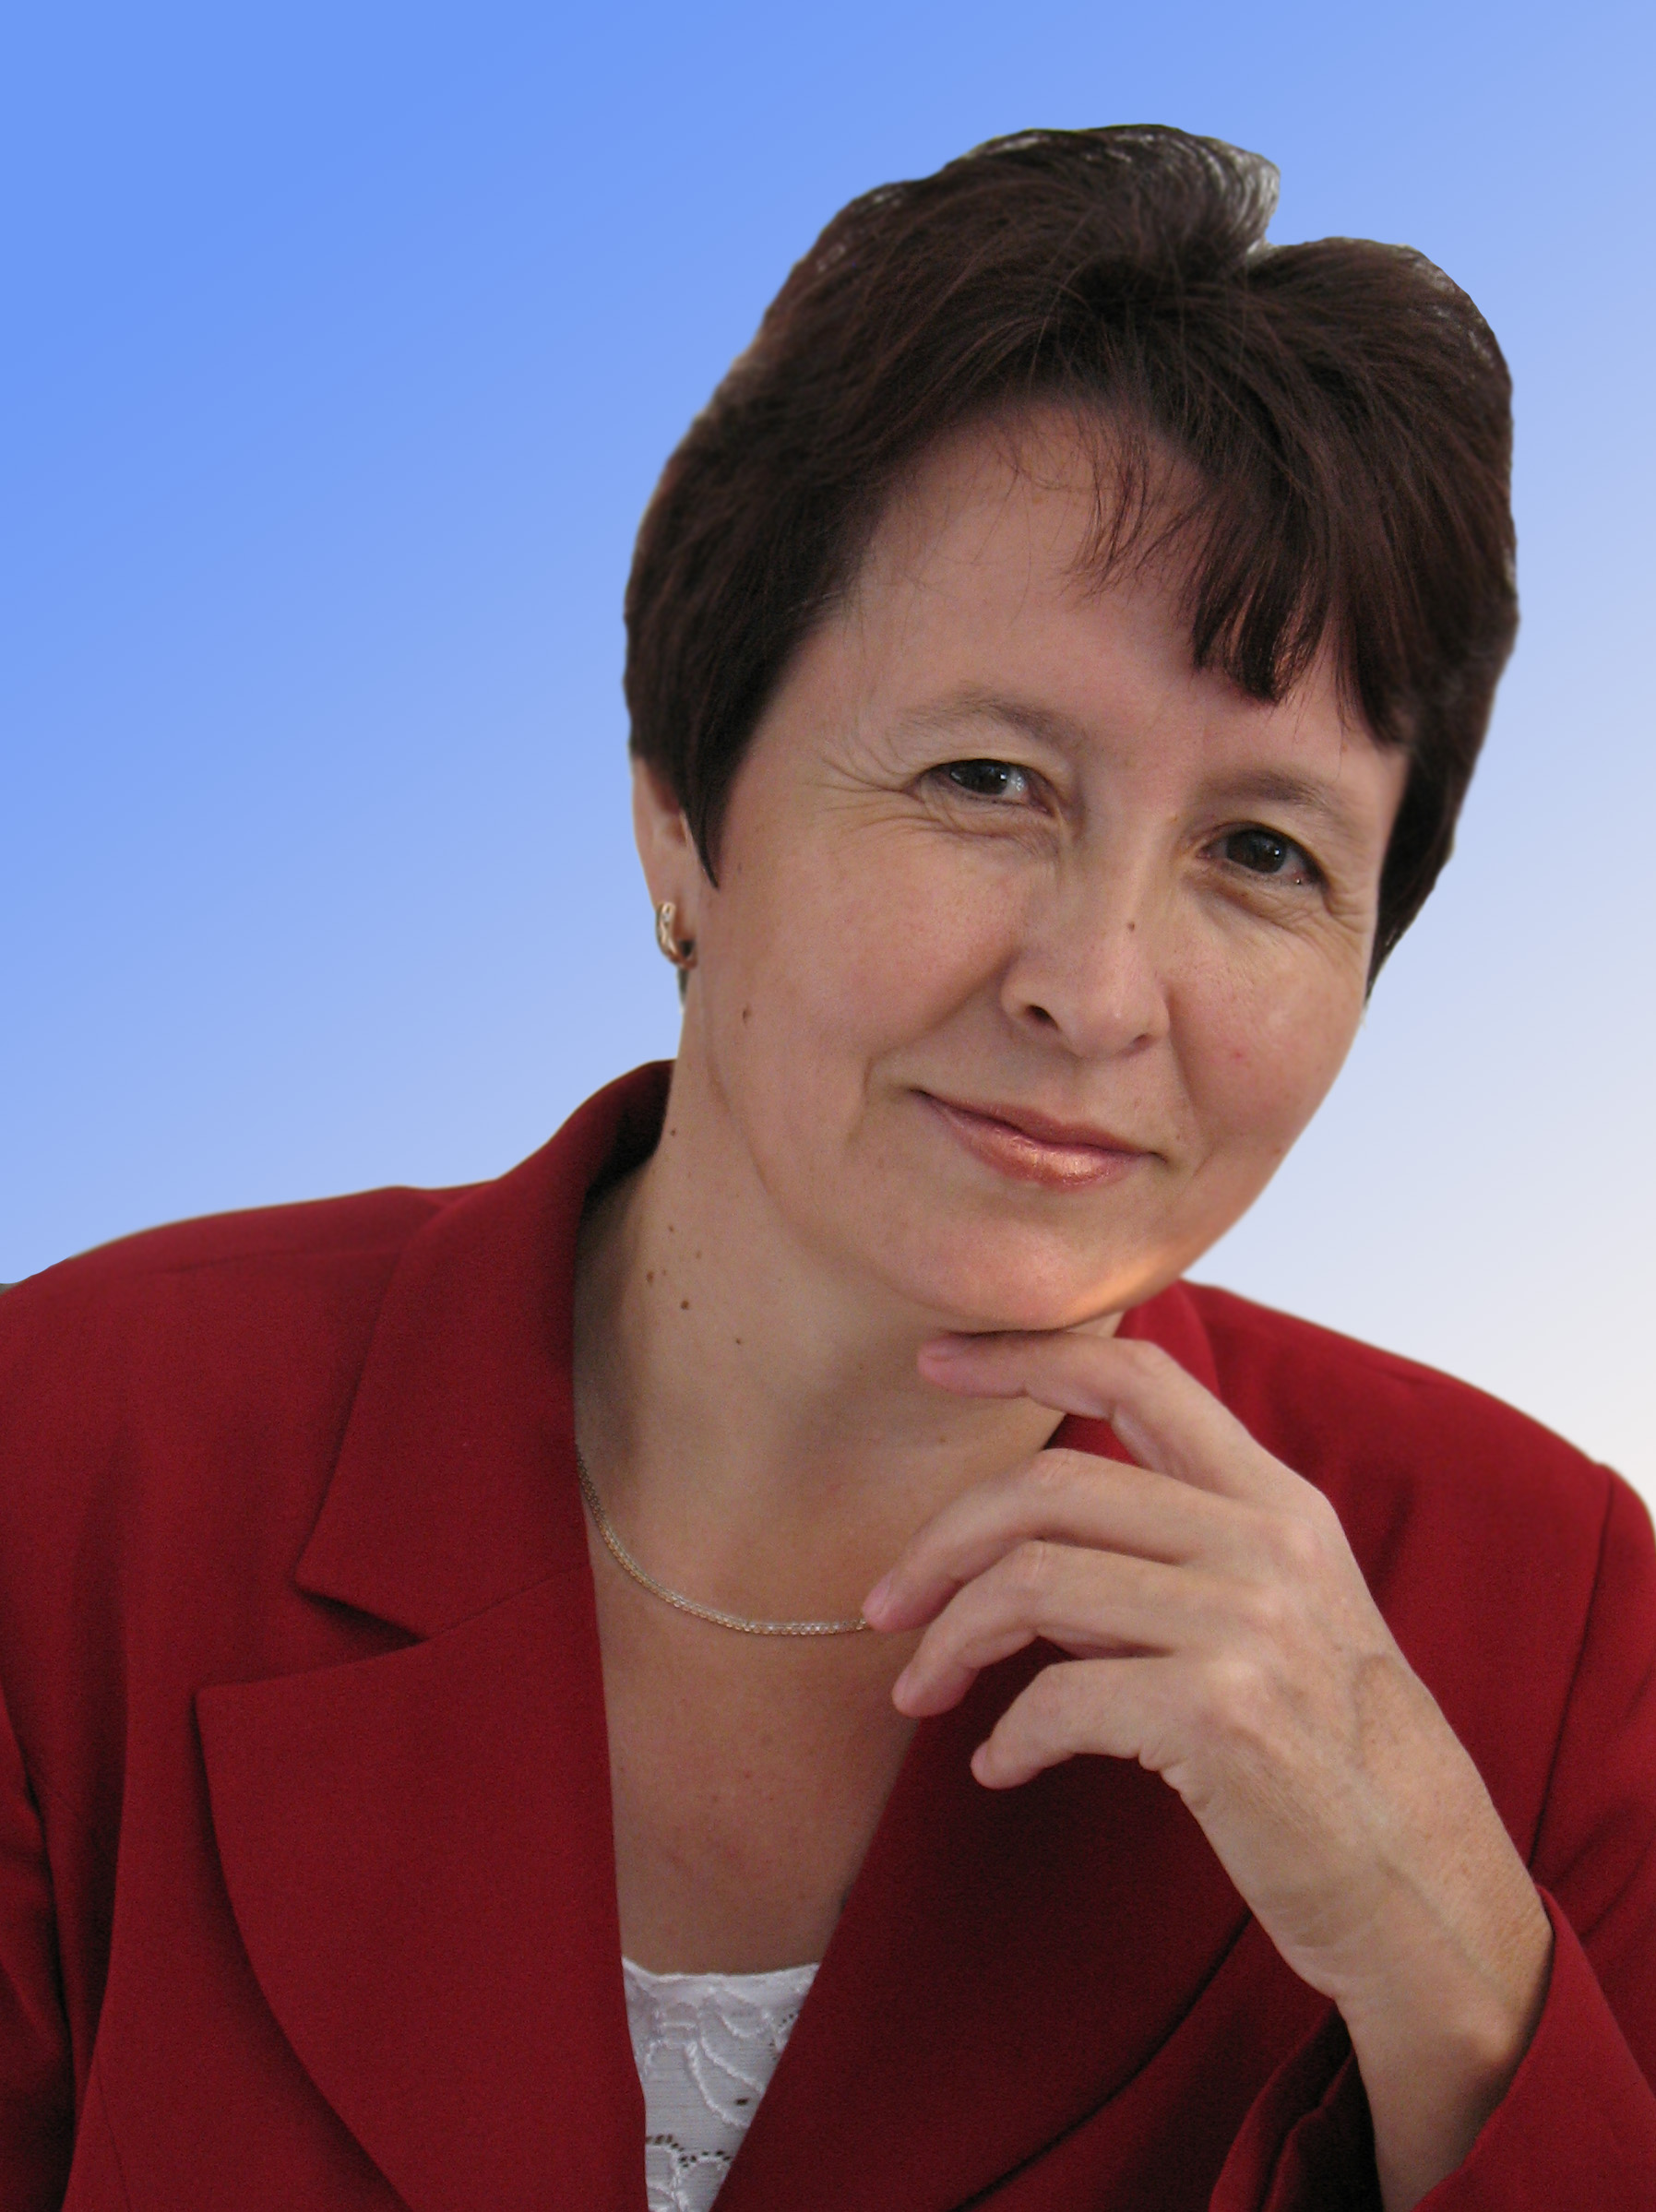 Әлфия Ситдыйкова – Татарстан Республикасының атказанган мәдәният хезмәткәре